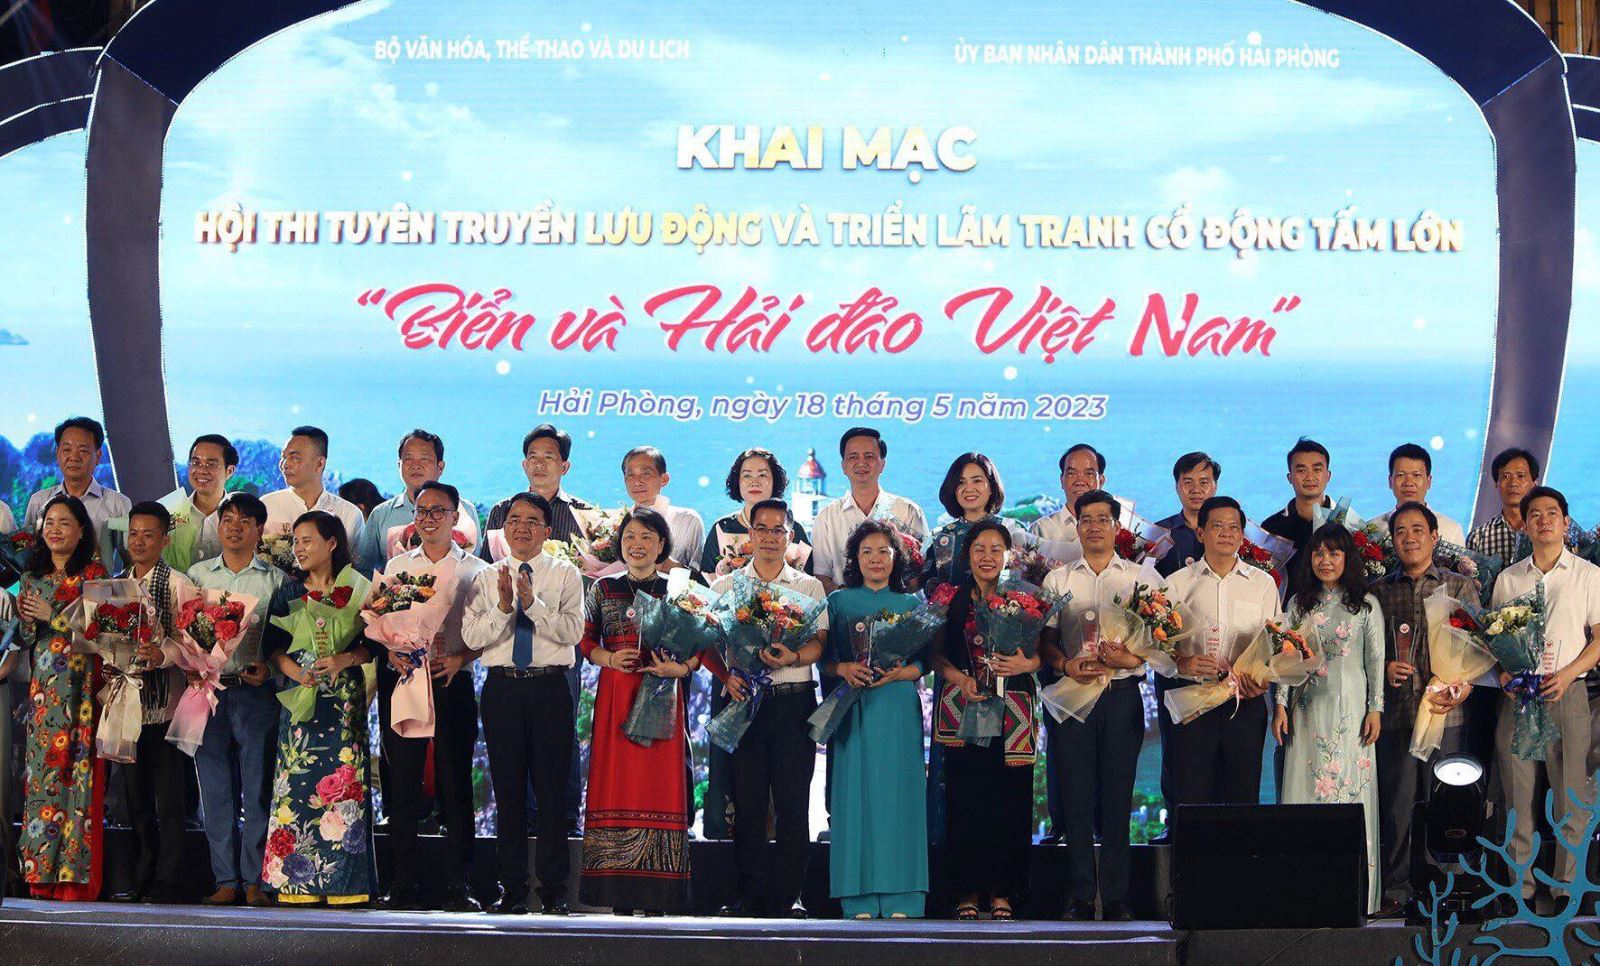 Khai mạc Hội thi tuyên truyền lưu động “Biển và Hải đảo Việt Nam”